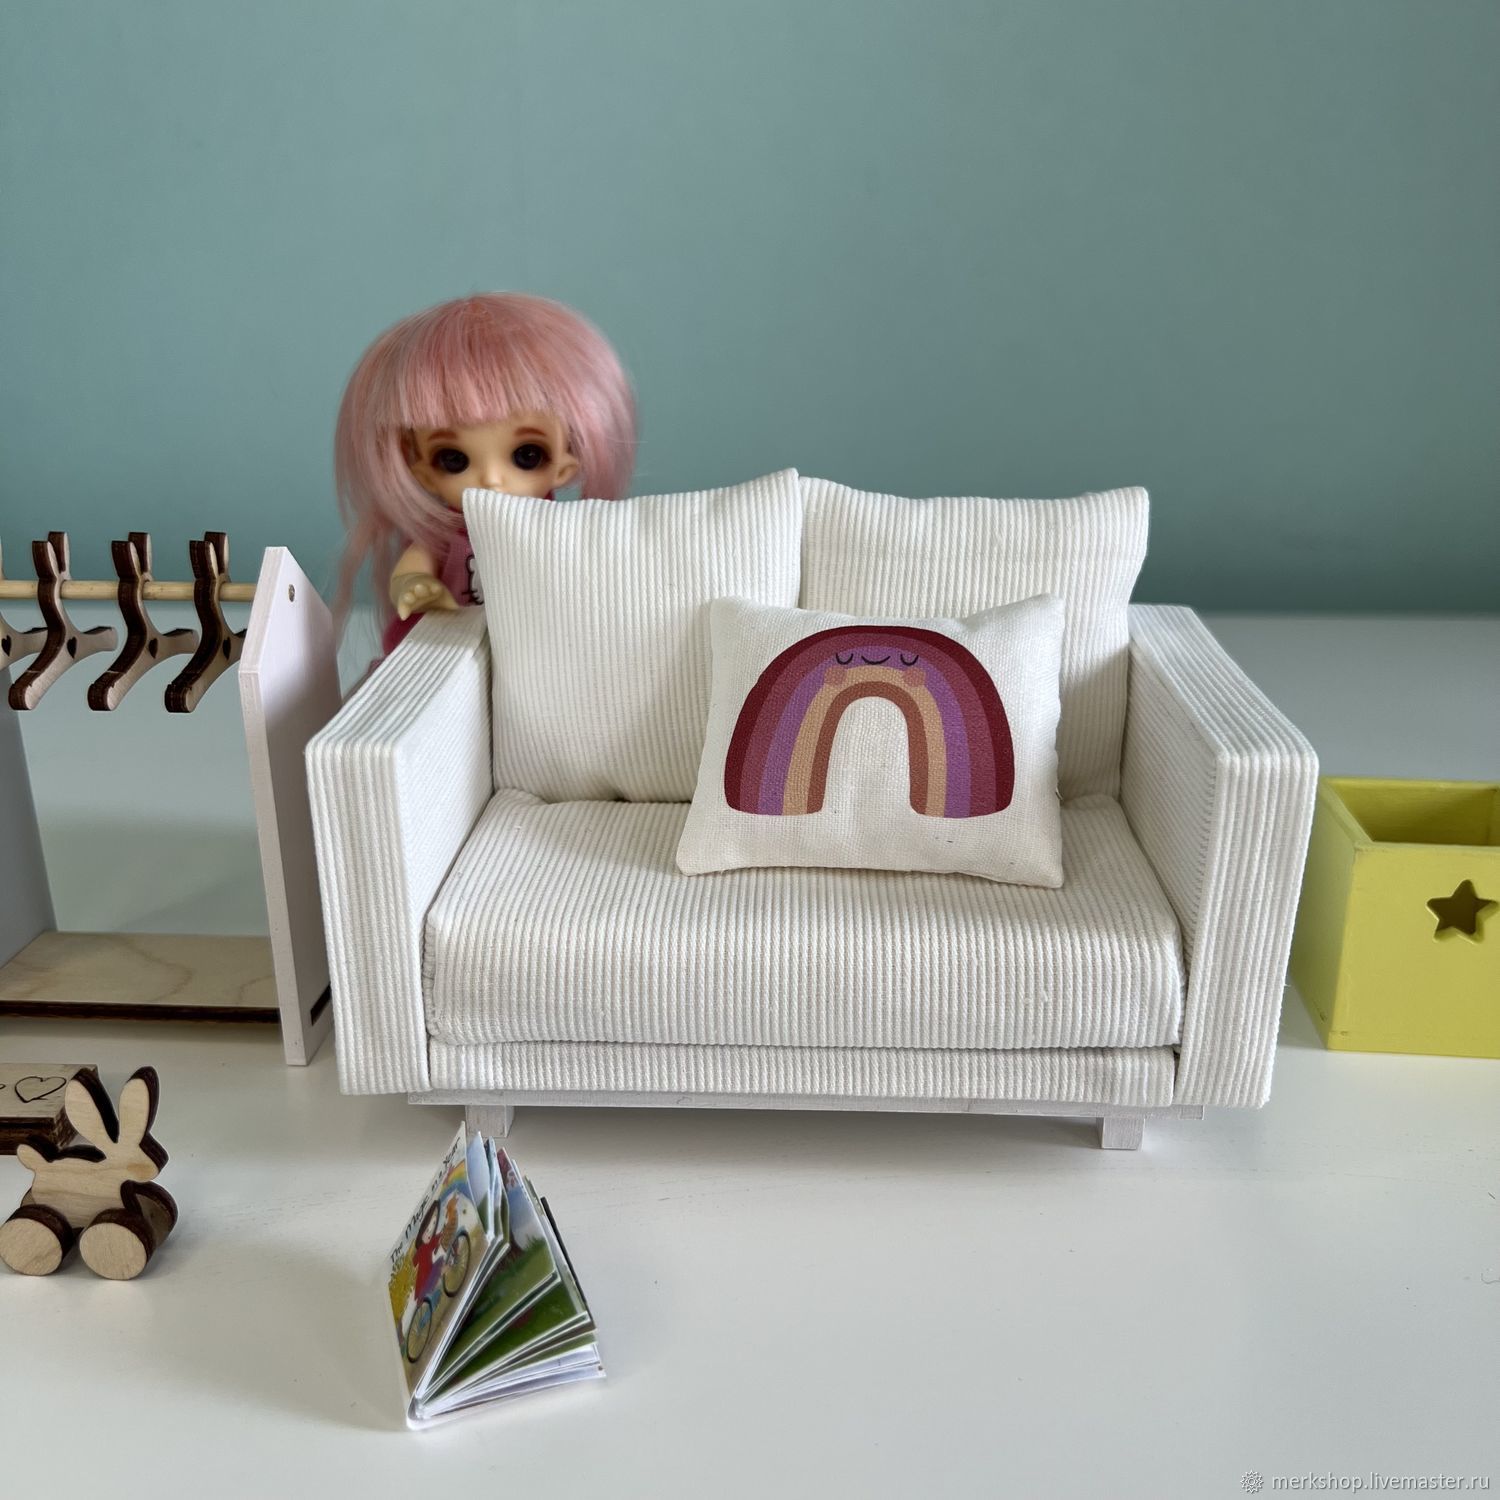 Мебель для кукол барби - - купить в Украине на malino-v.ru